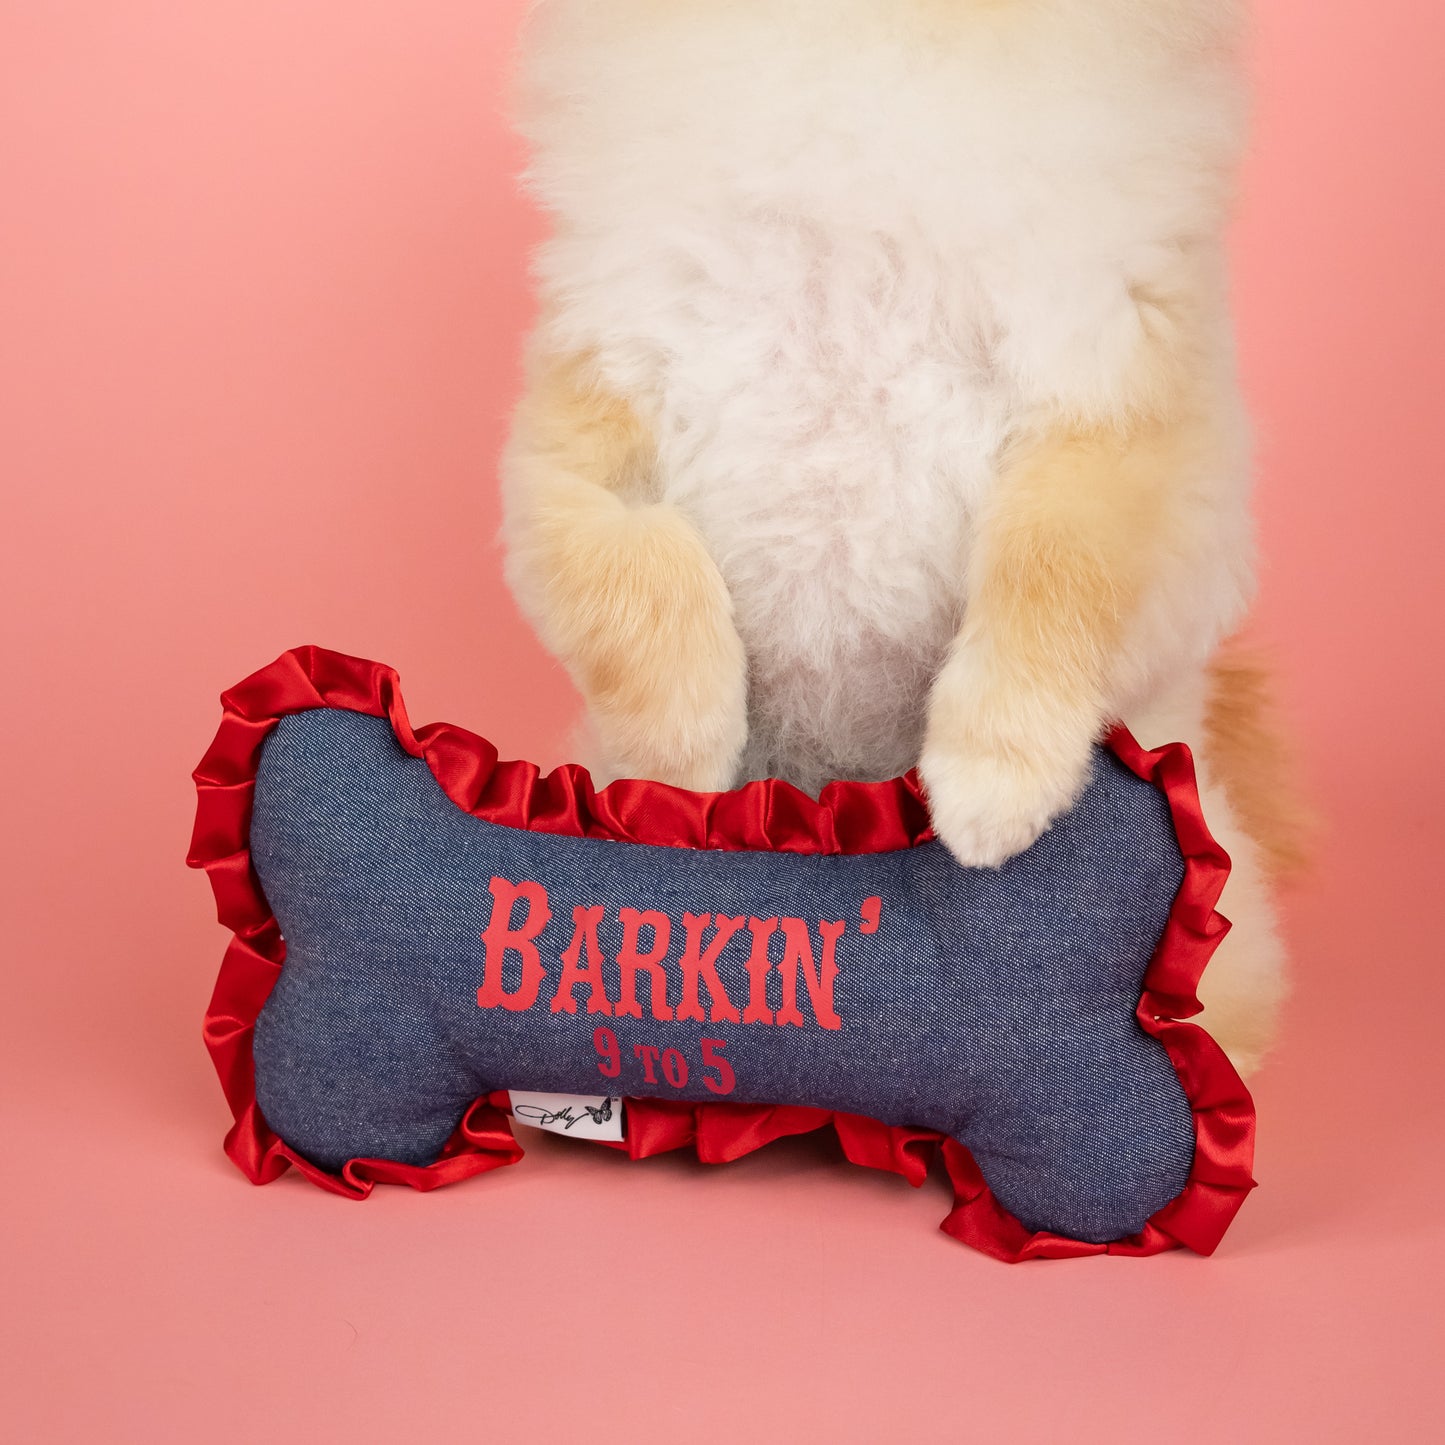 Barkin’ 9 to 5 Plush Bone Dog Toy